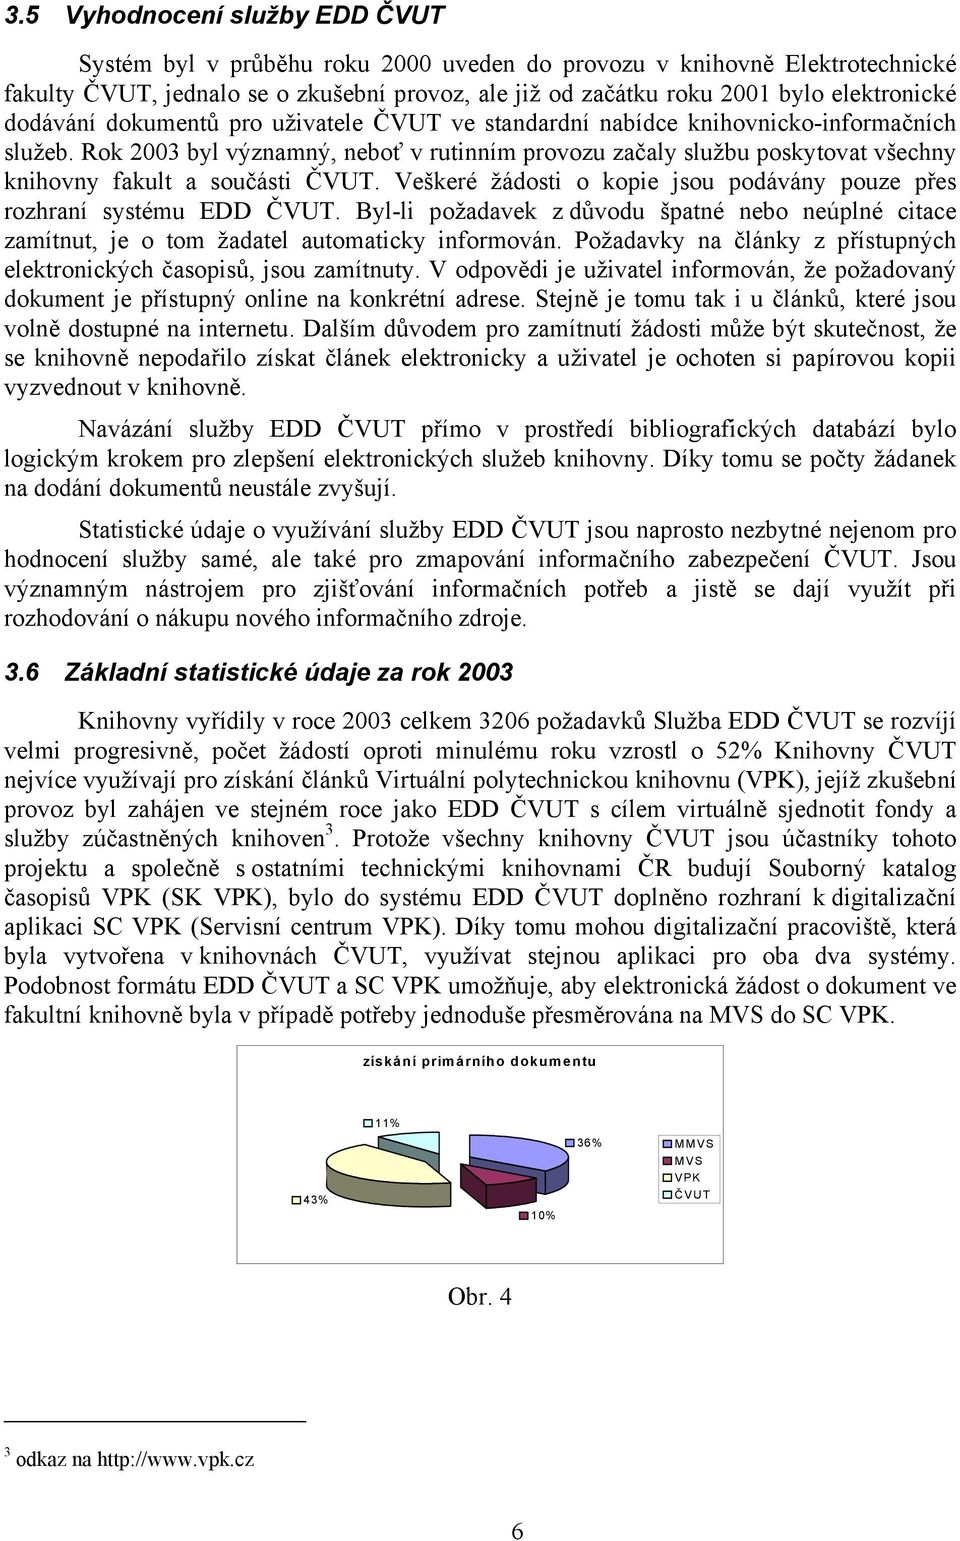 Rok 2003 byl významný, neboť v rutinním provozu začaly službu poskytovat všechny knihovny fakult a součásti ČVUT. Veškeré žádosti o kopie jsou podávány pouze přes rozhraní systému EDD ČVUT.